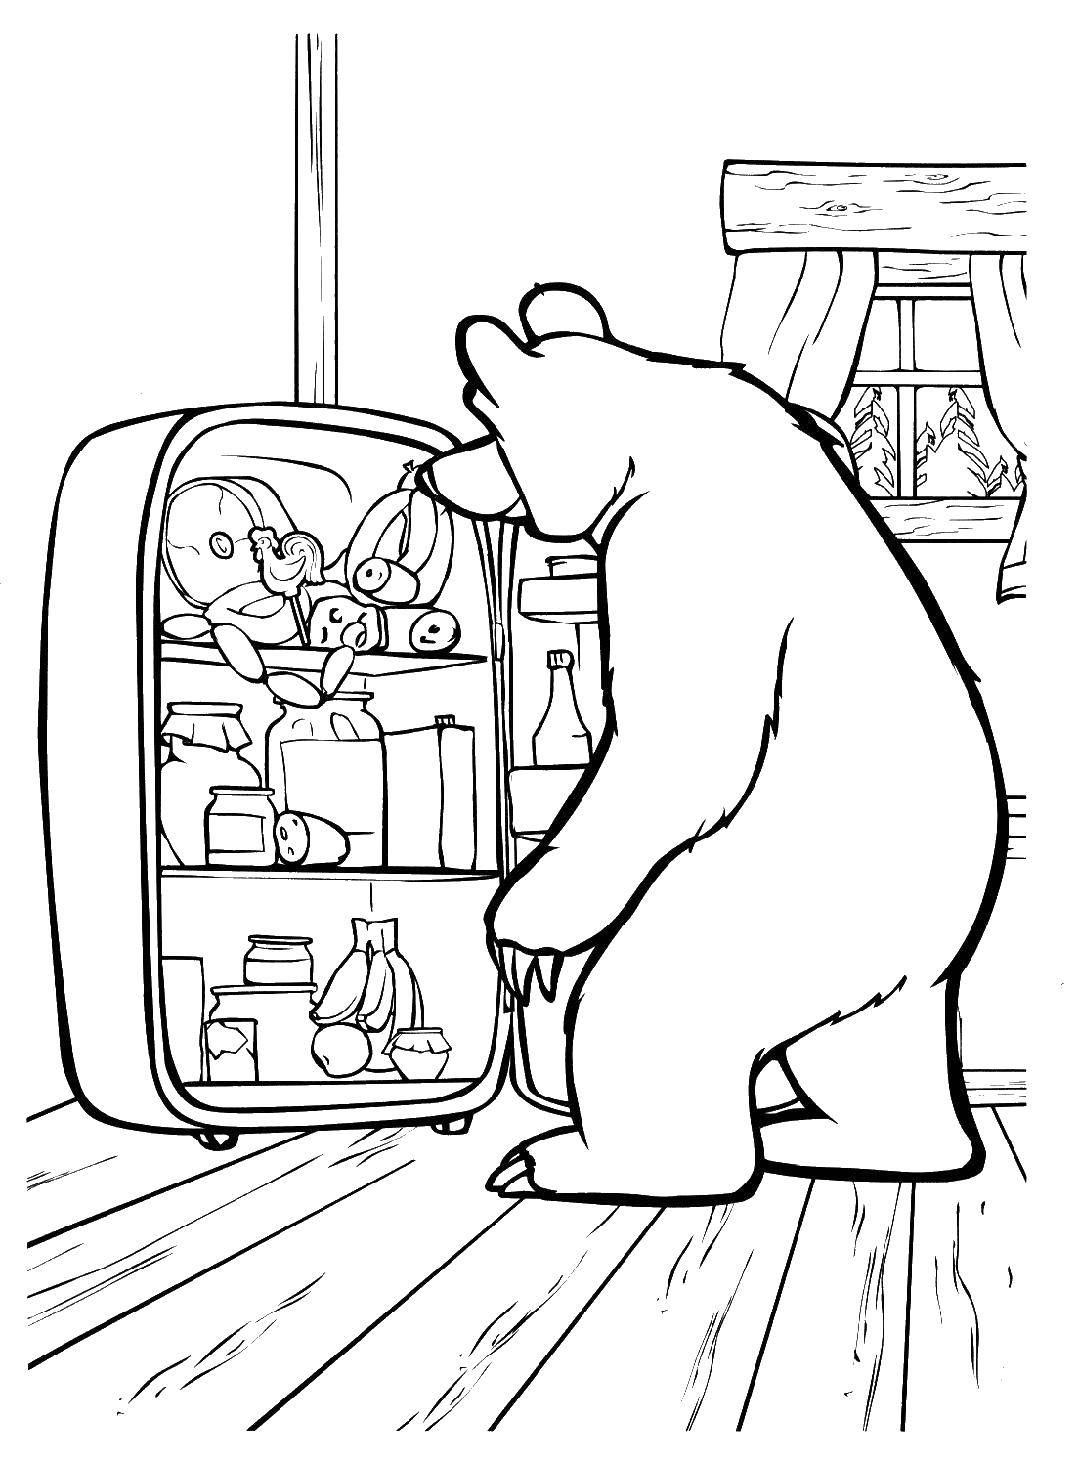  Медведь заглядывает в холодильник